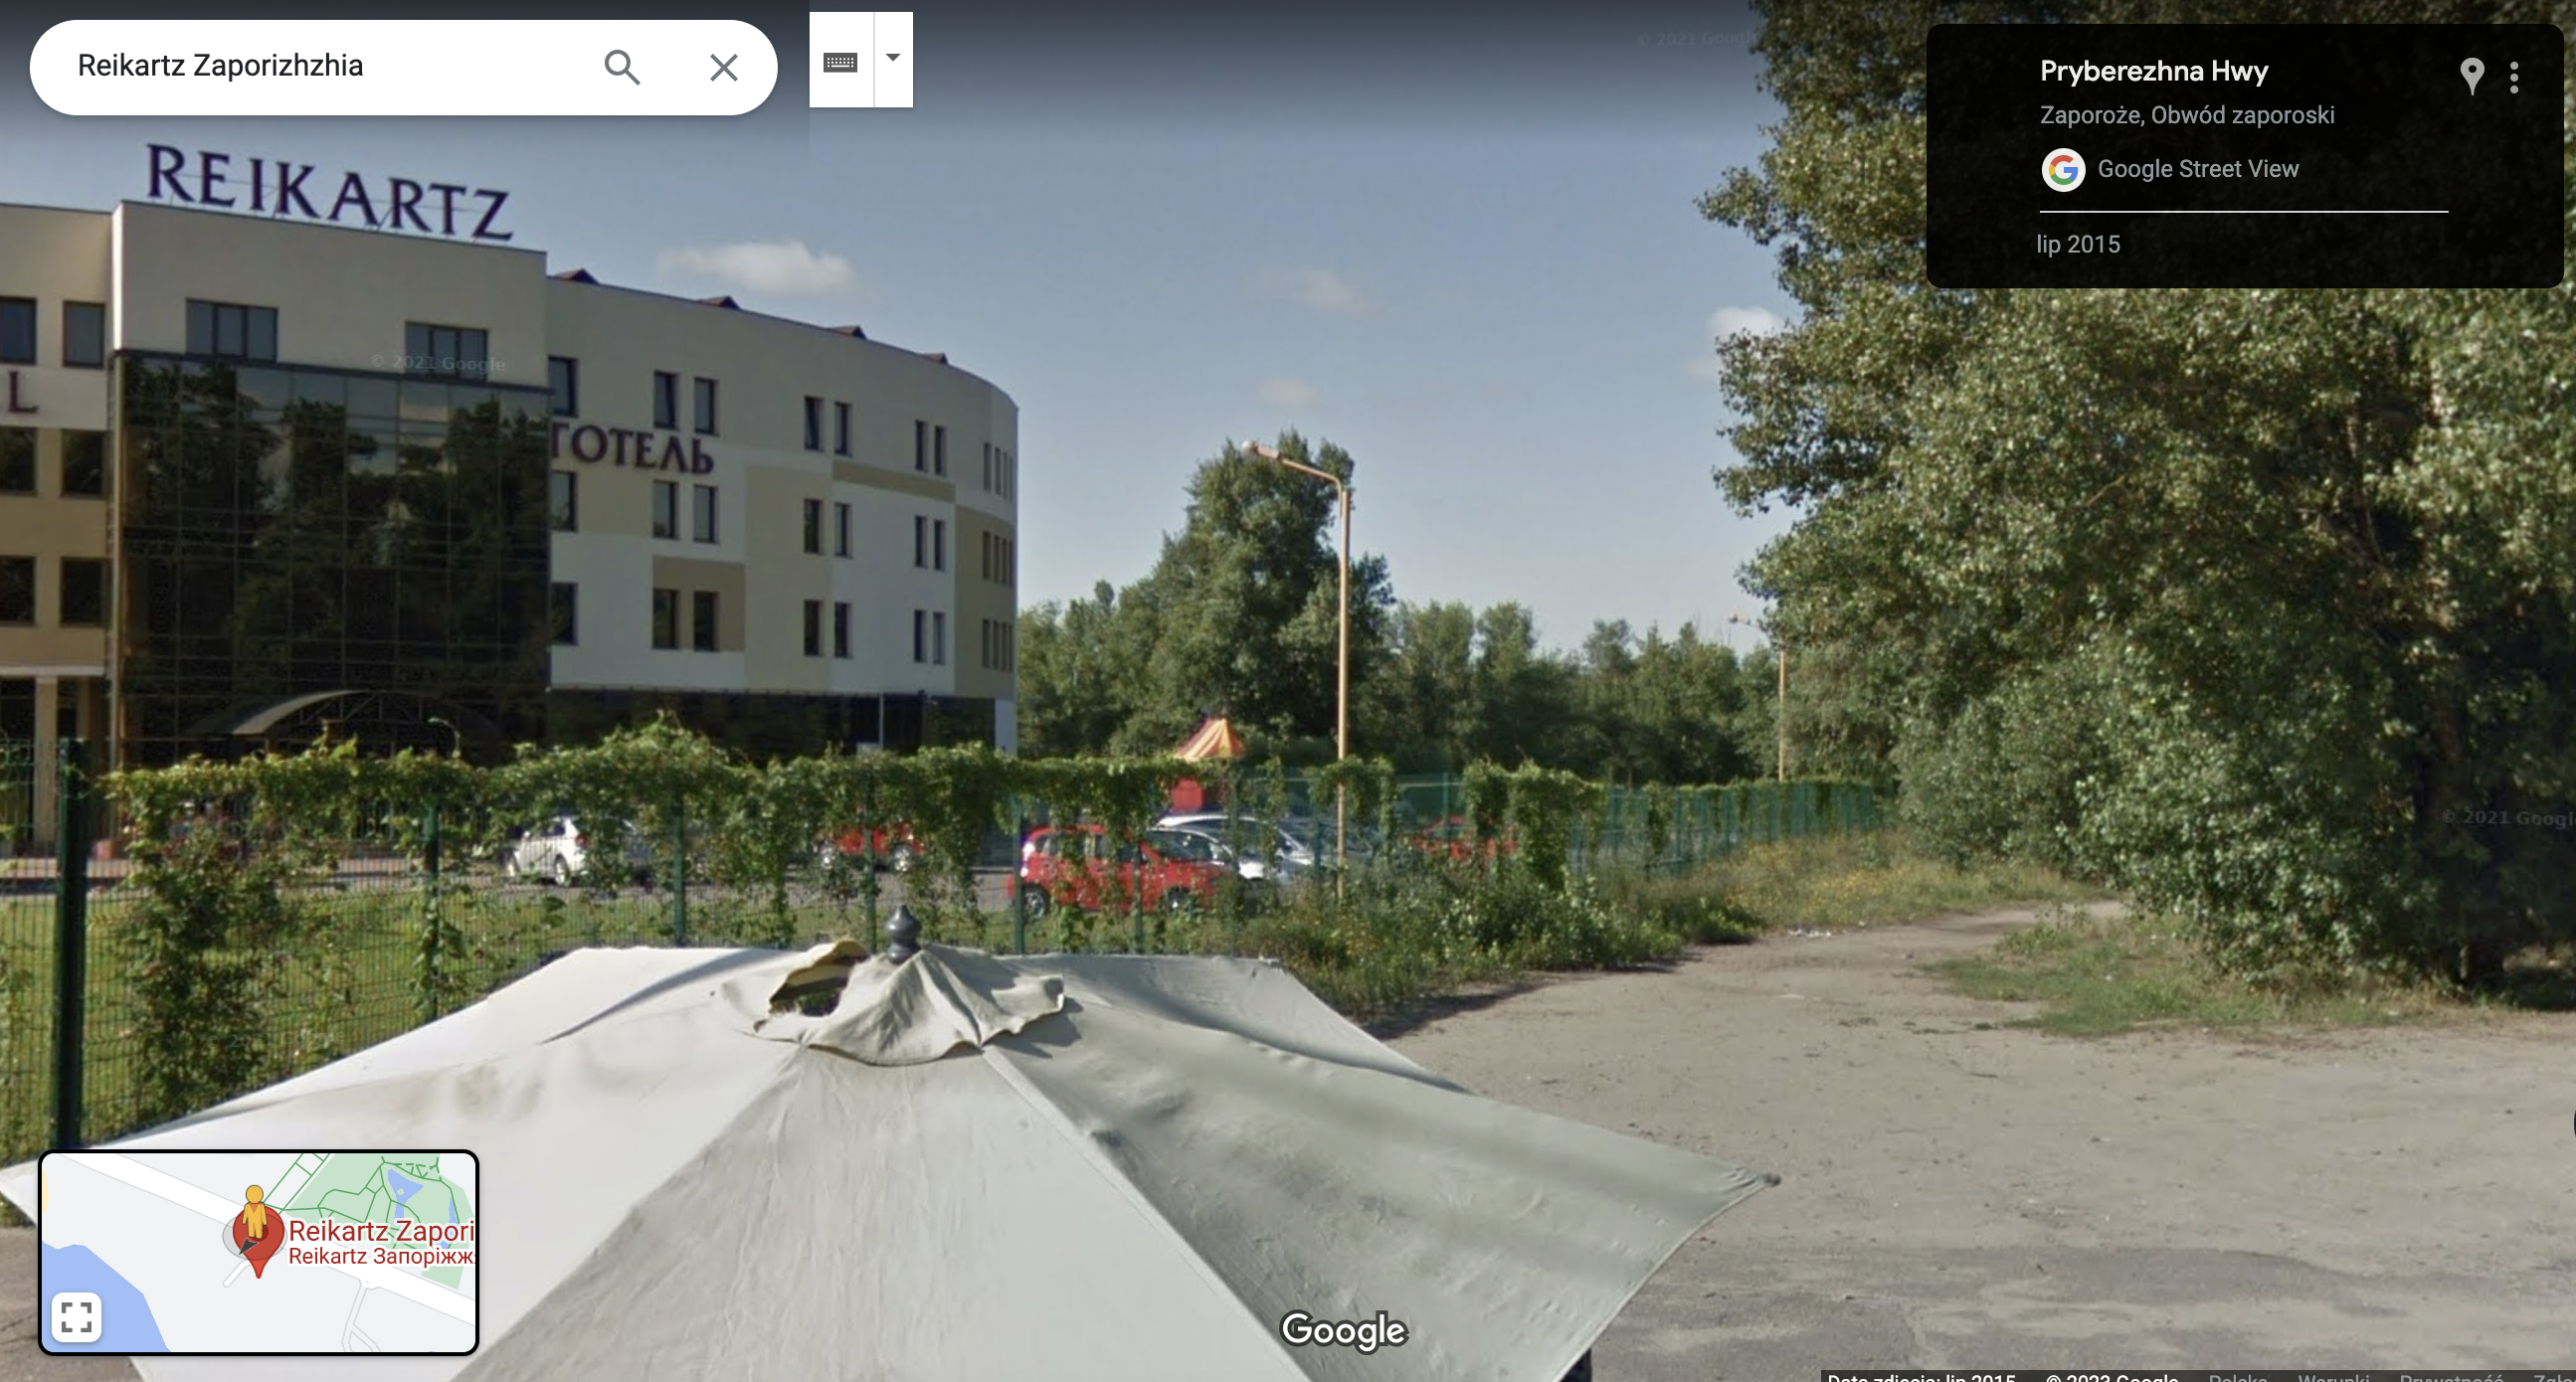 Zrzut ekranu z Google Street View. Zbliżenie budynku hotelu. Obiekt widoczny na prawo od neonu Reikartz.